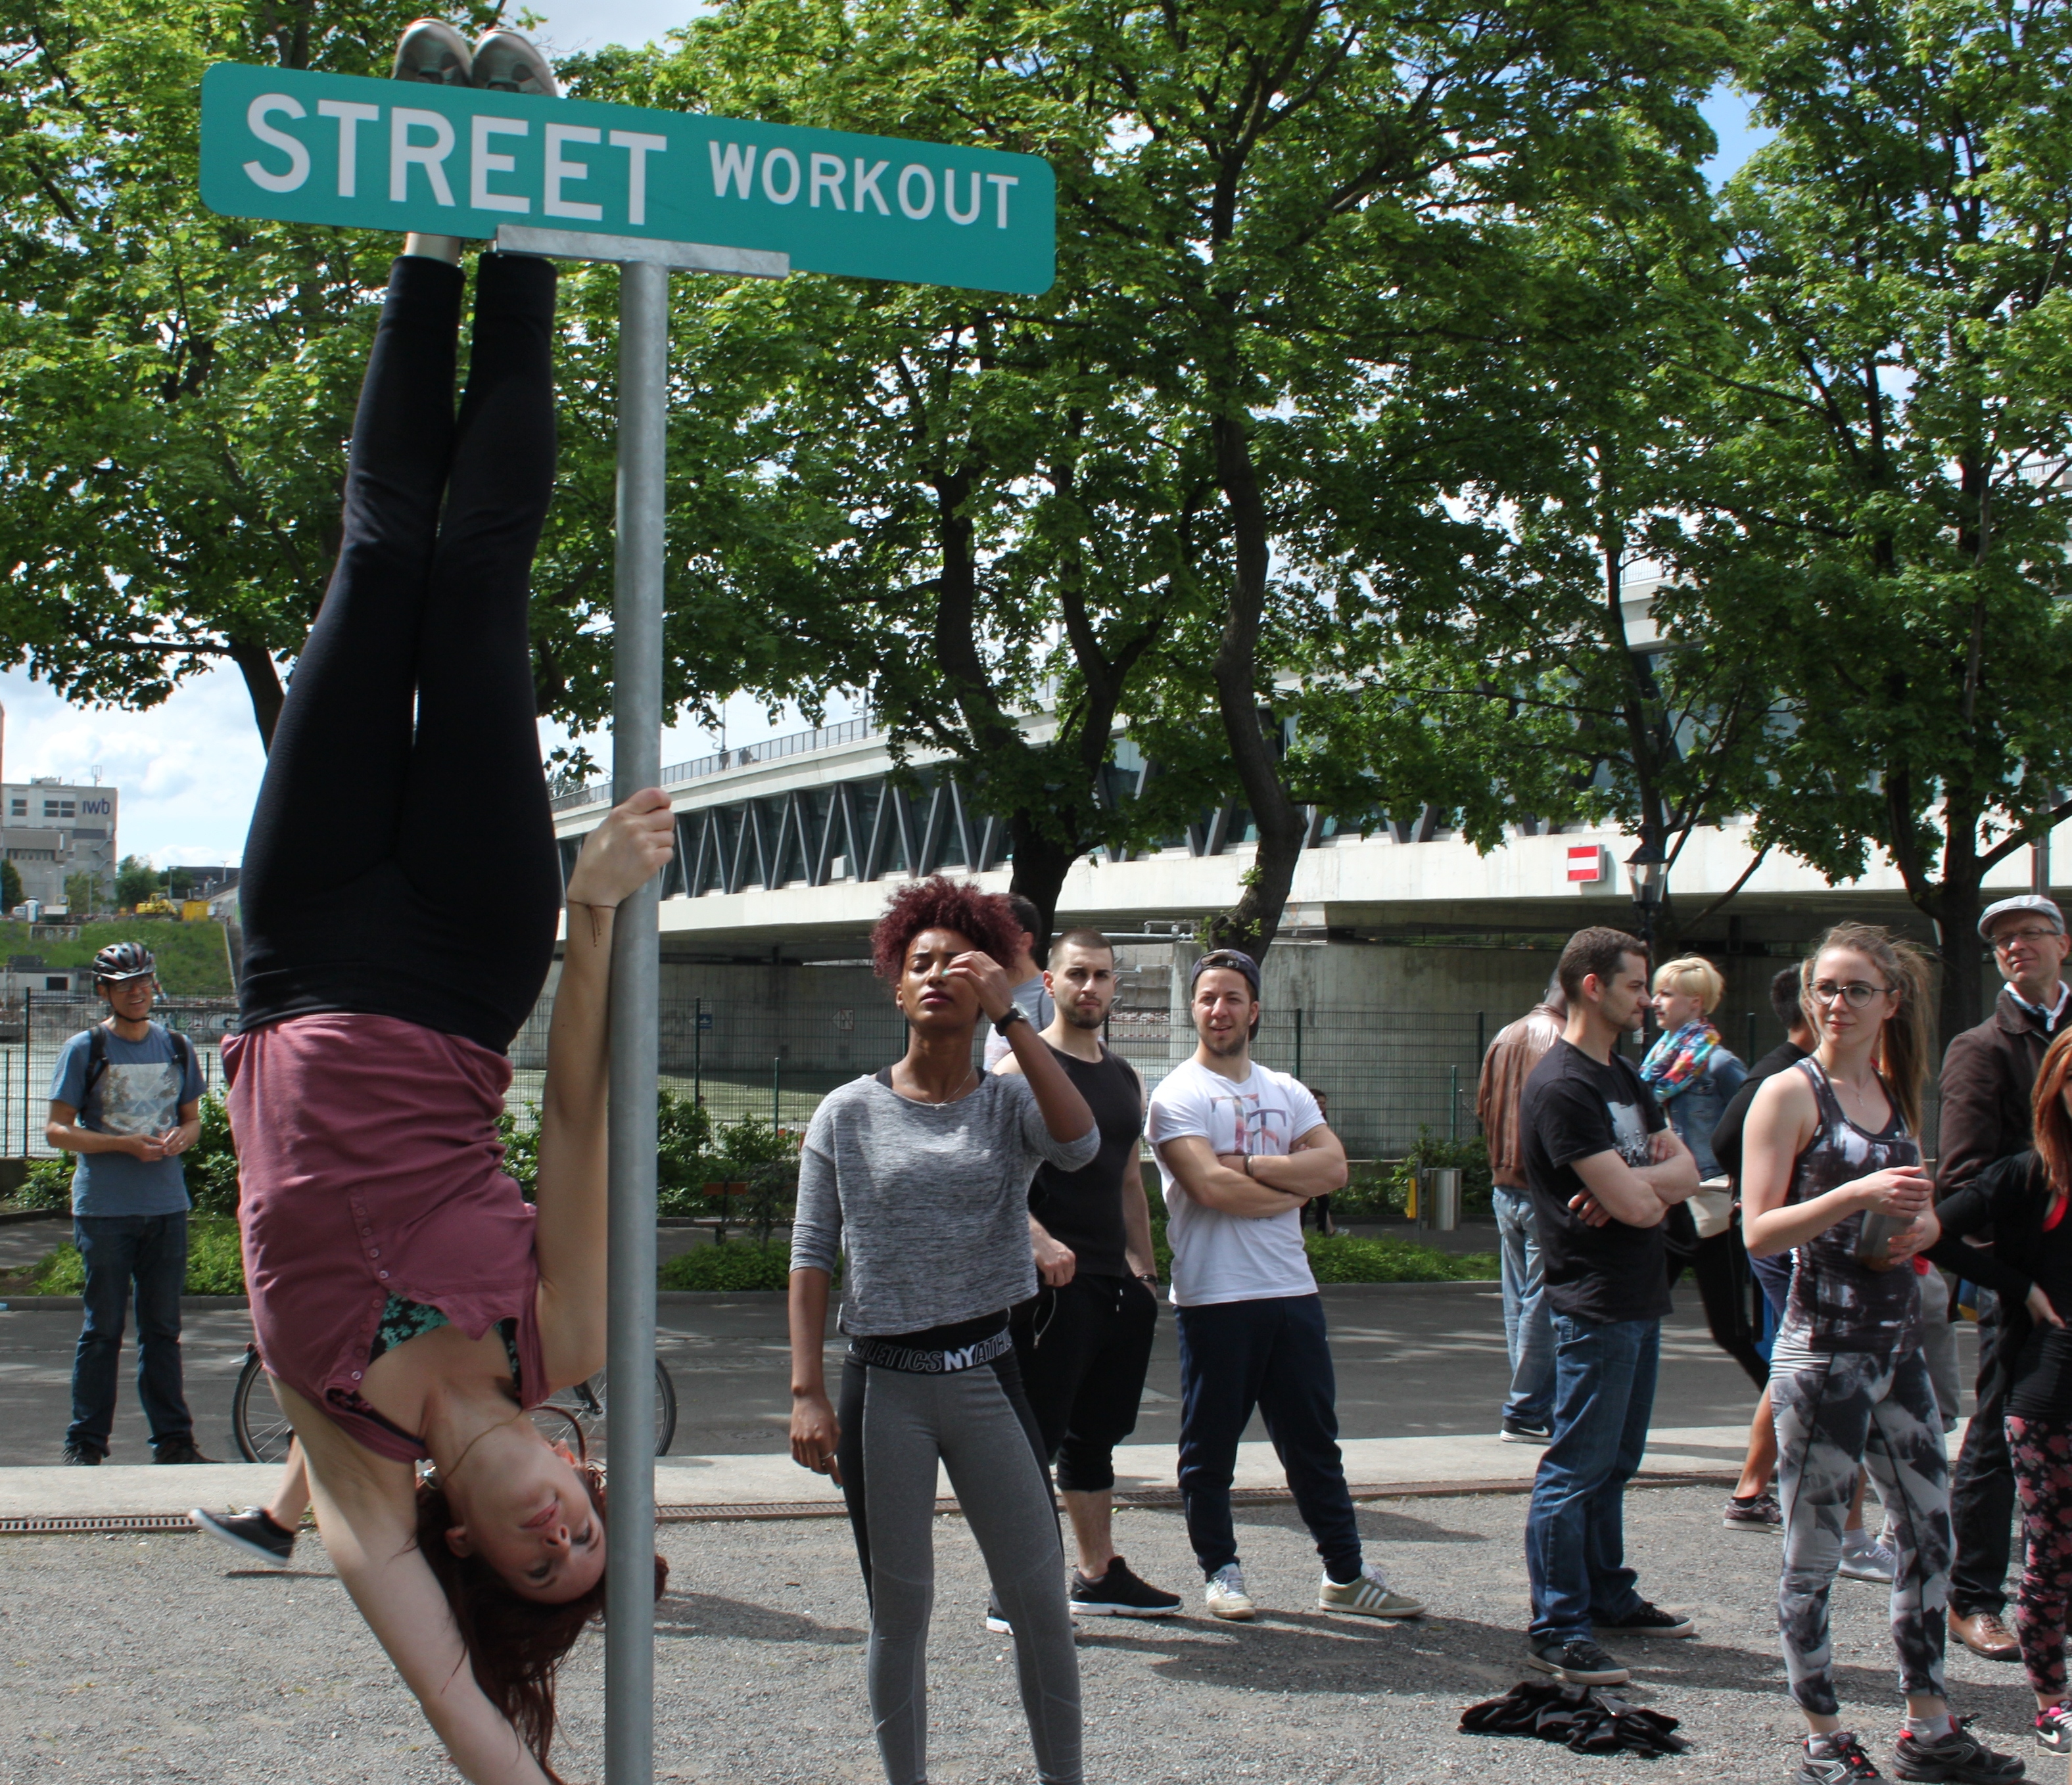 Bis man die anspruchsvollen Street-Workout-Moves beherrscht, dauert es. Aber was soll's. Die Strasse ist immer geöffnet.